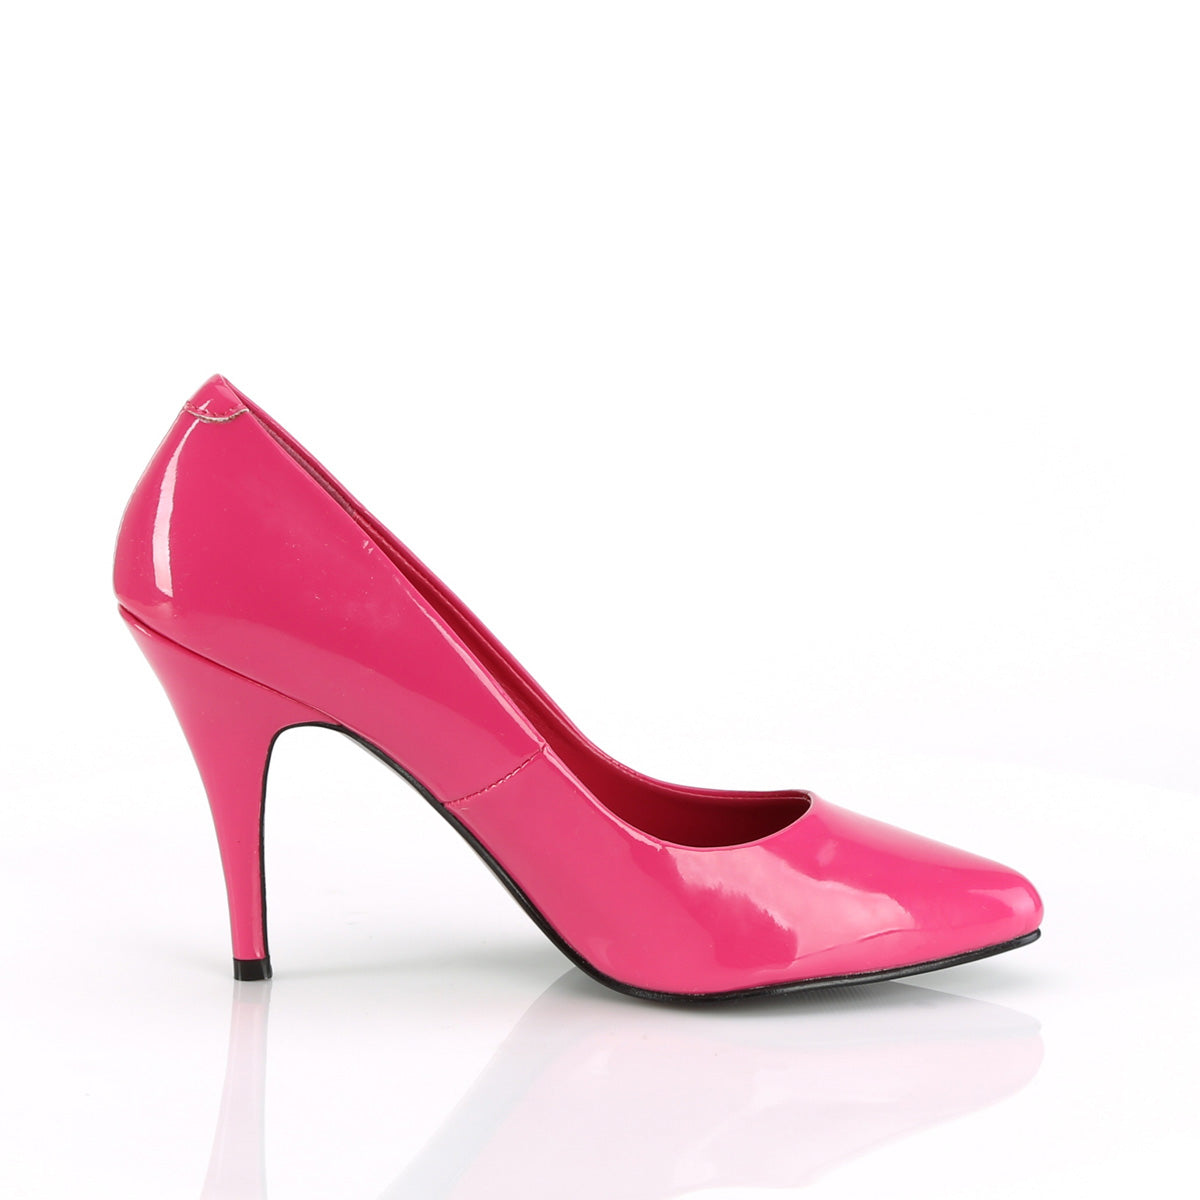 4 Inch Heel VANITY-420 Hot Pink Patent